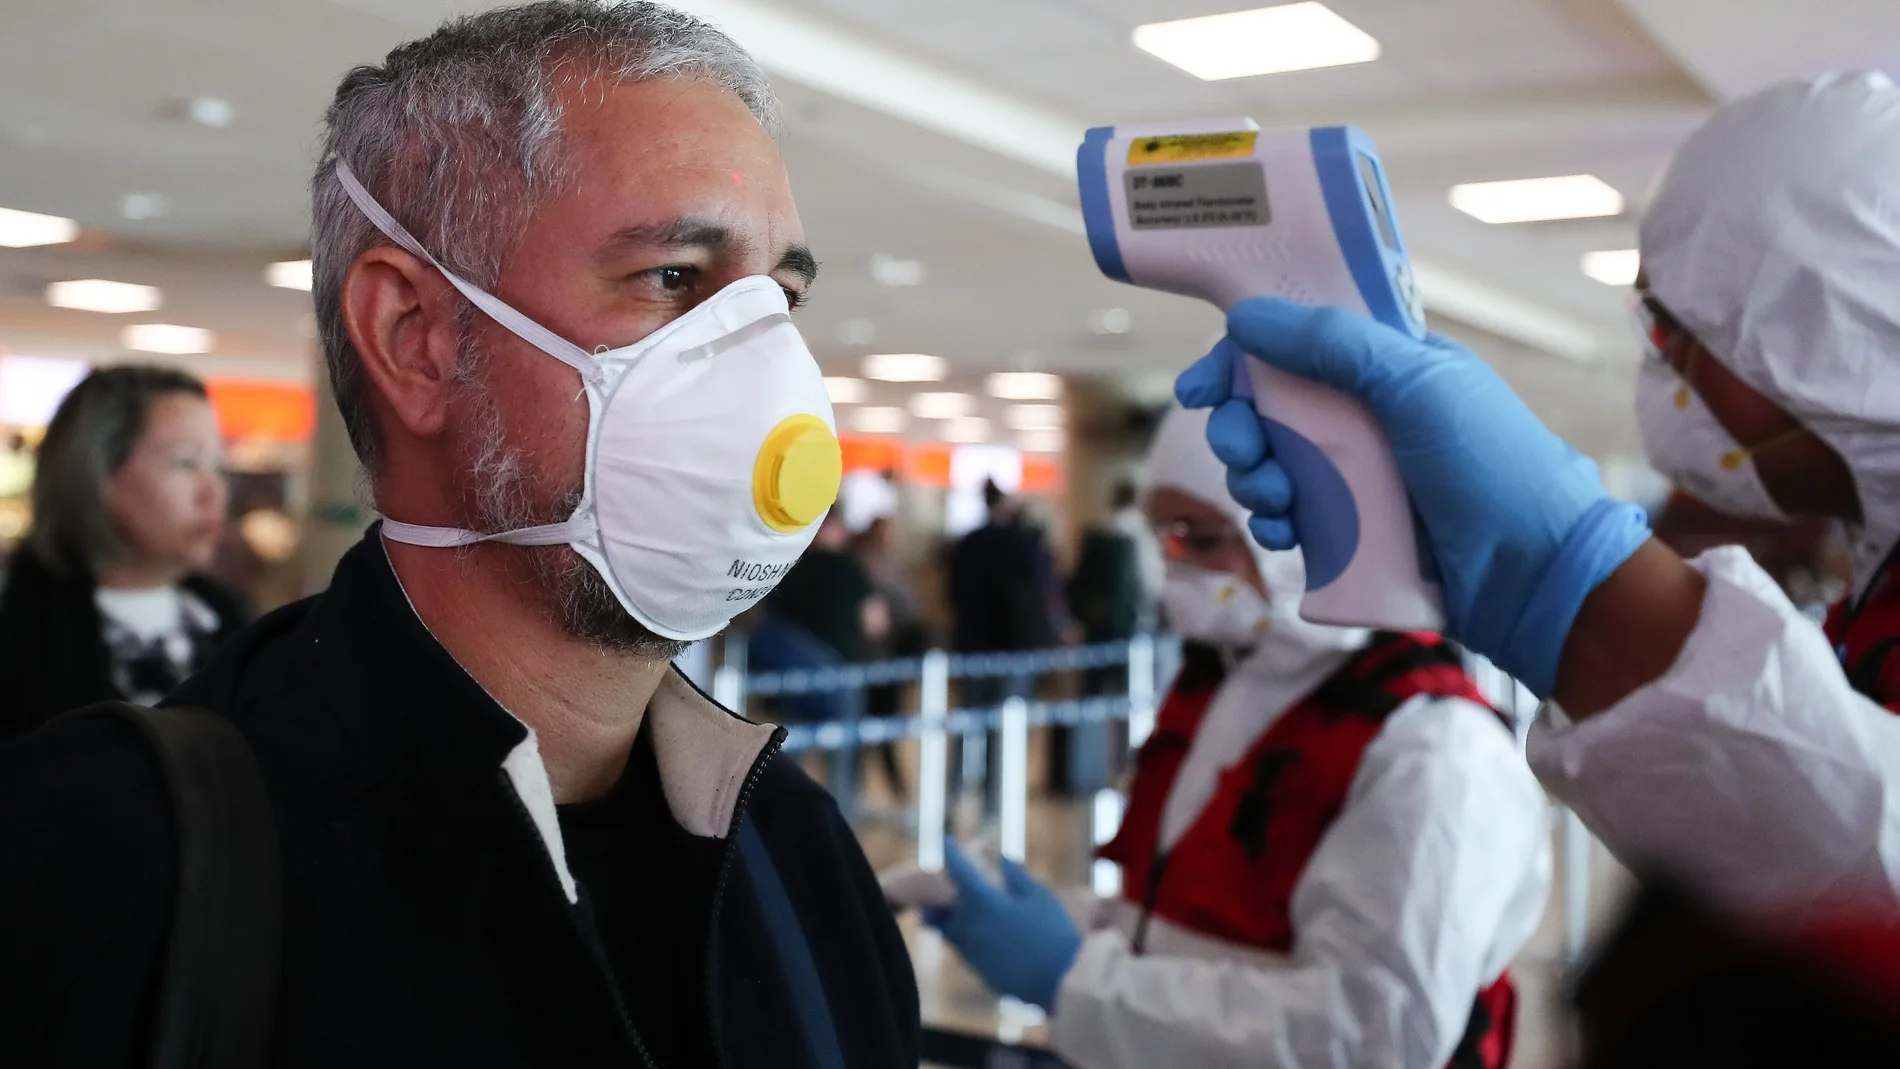 Autoridades refuerzan controles en aeropuertos ante Coronavirus